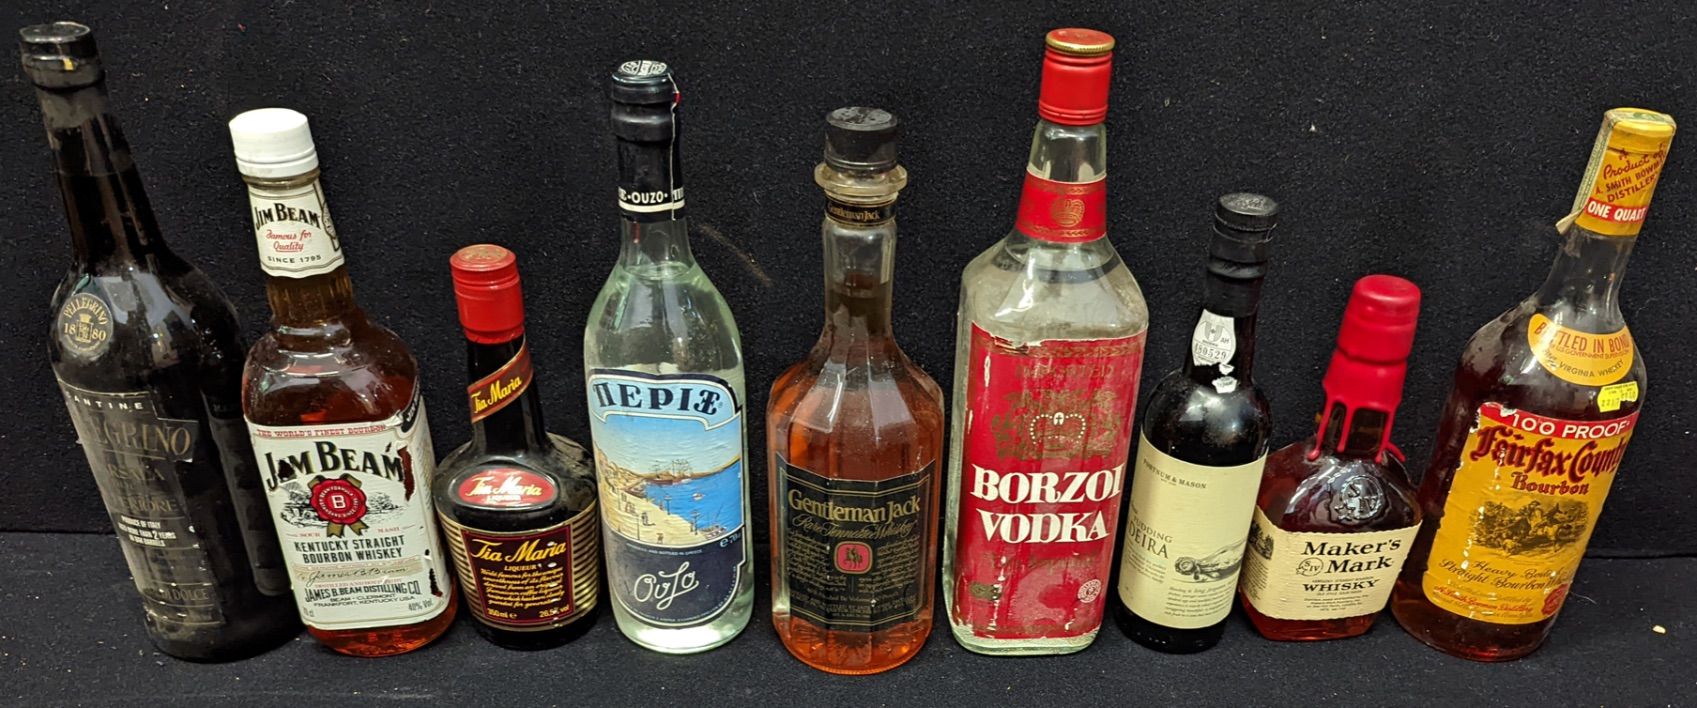 Jack Daniels Une bouteille de Jack Daniels Gentleman Jack 1980's, ainsi que 8 au&hellip;